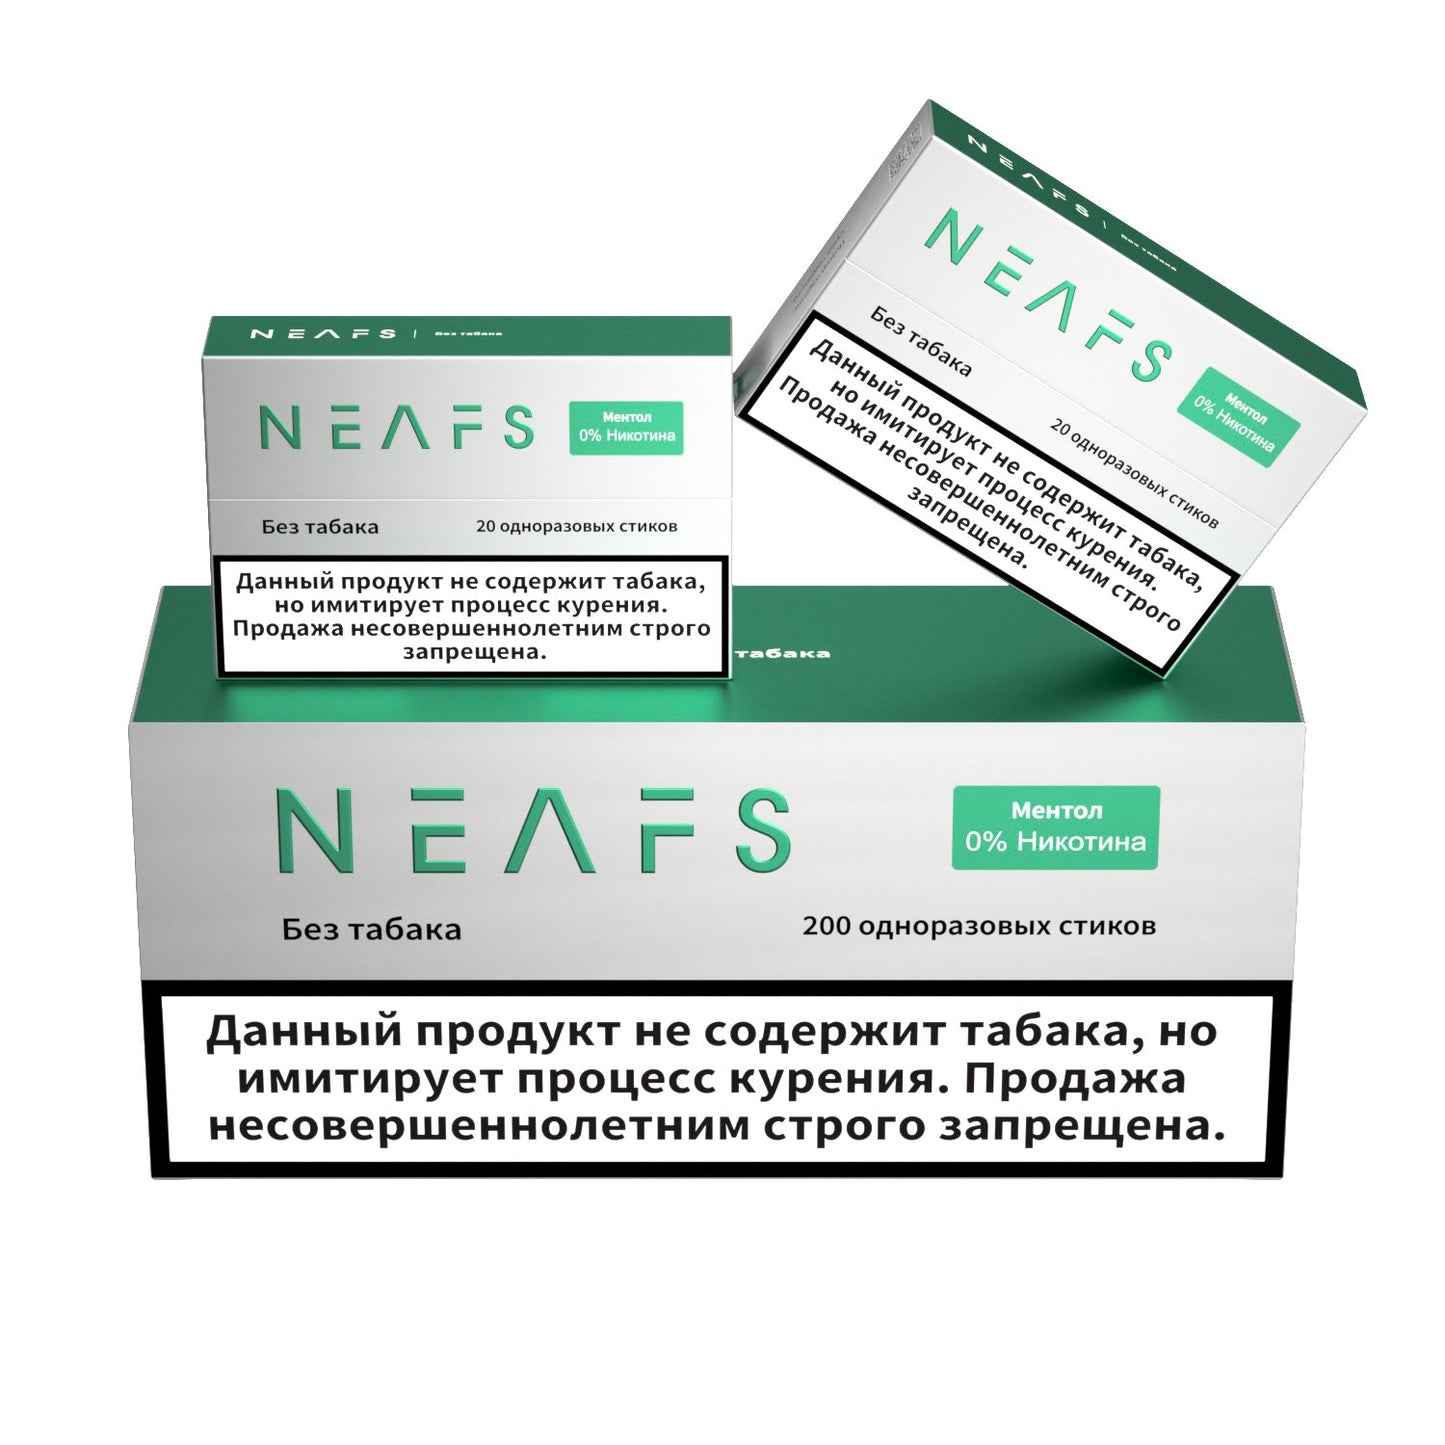 Безникотиновые стики NEAFS Ментол 0% – 200 стиков